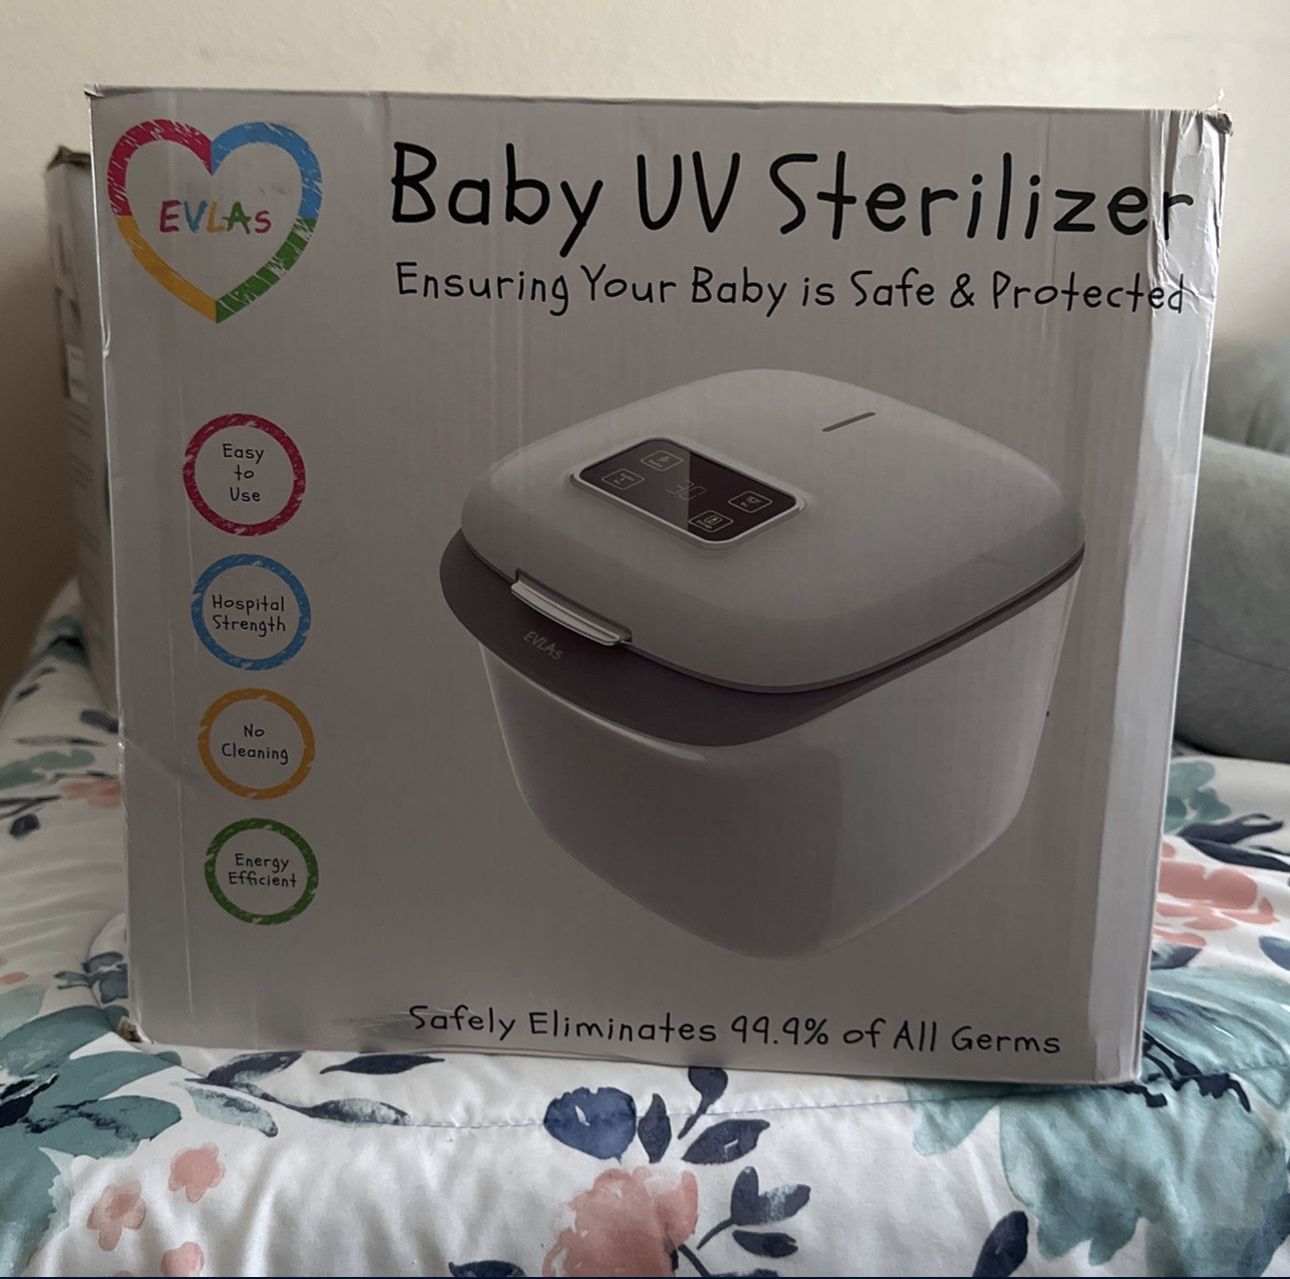 Baby UV sterilizer